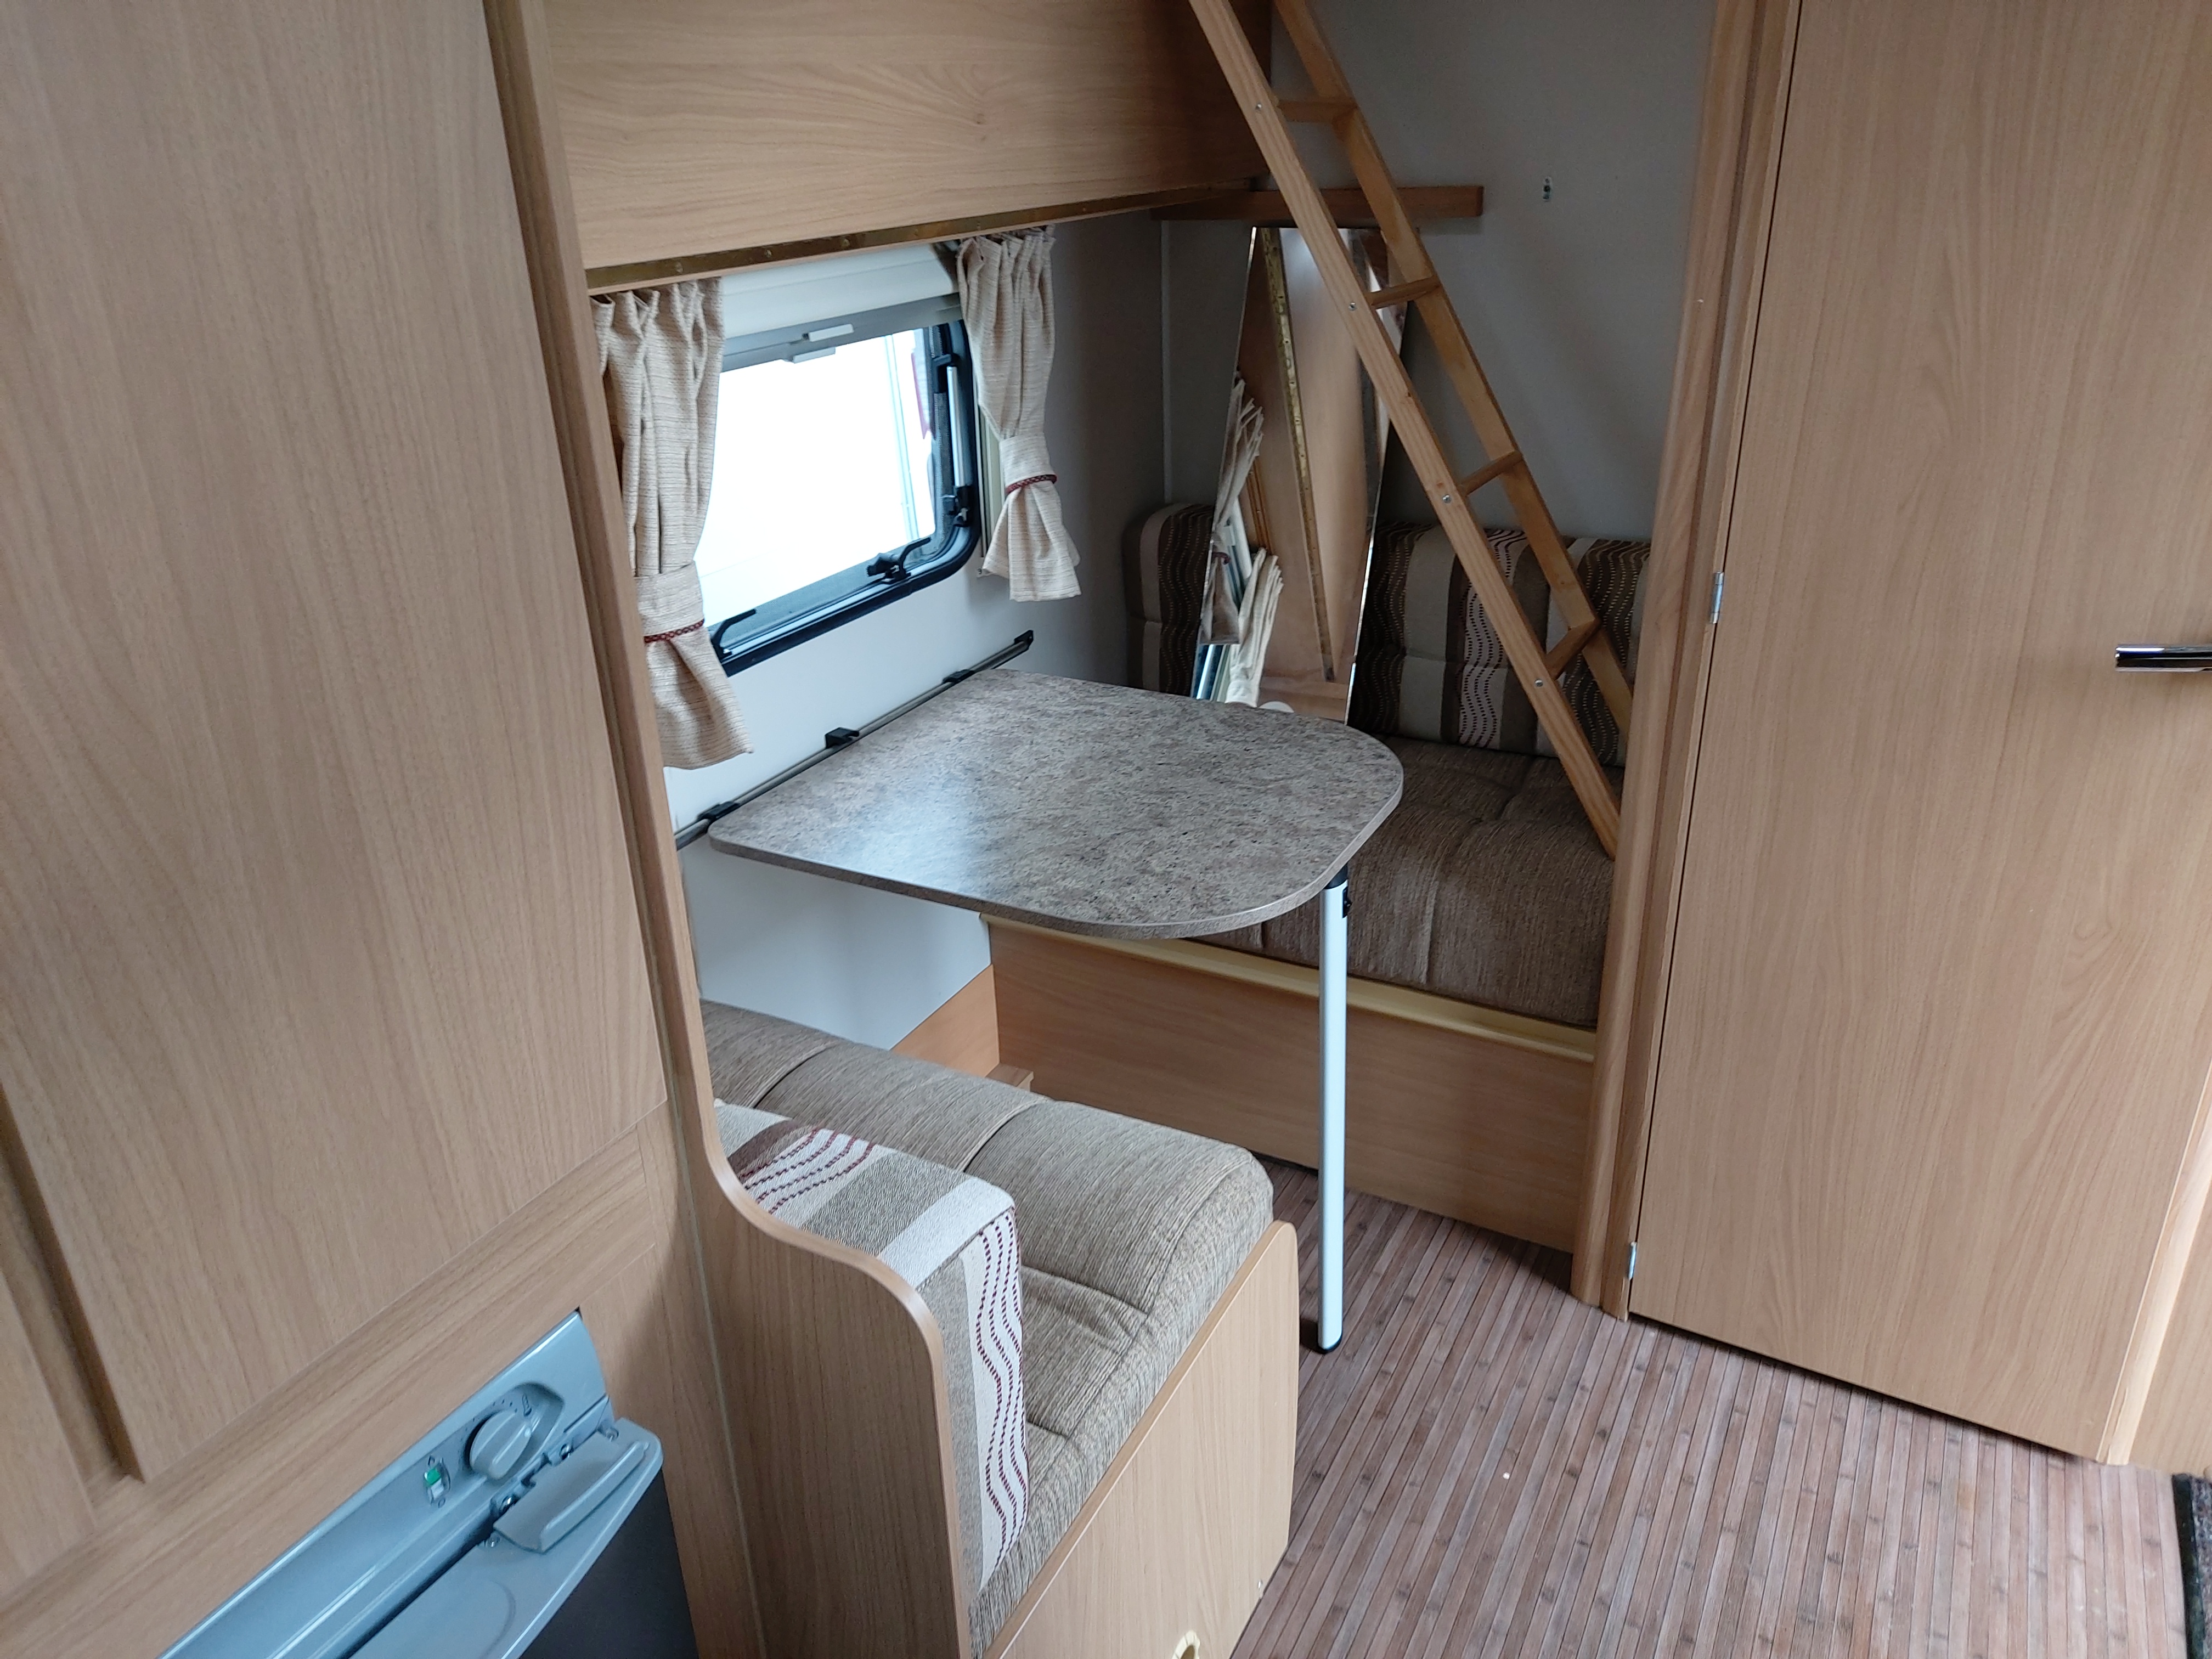 2012 Elddis Xplore 304 4 Berth Lightweight Compact Caravan, Solar